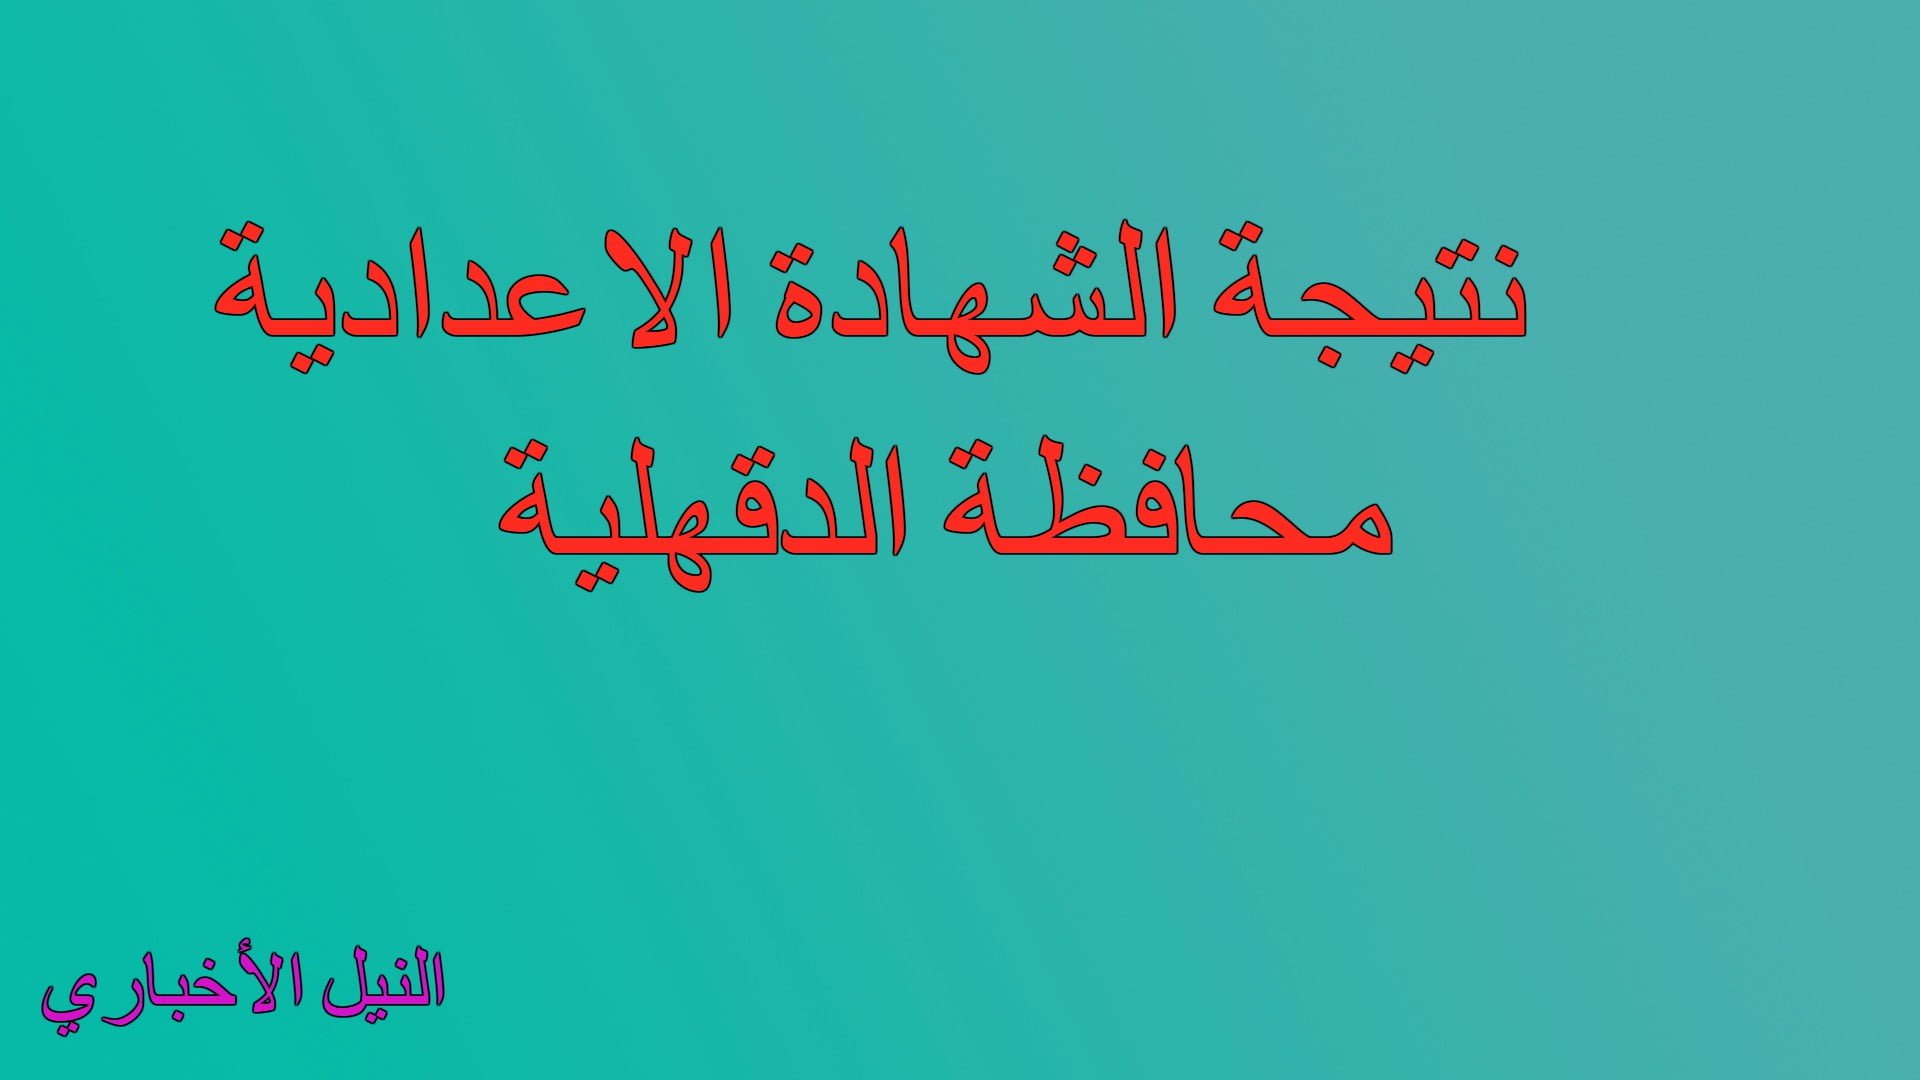 نتيجة الشهادة الاعدادية 2019 أخر العام محافظة الدقهلية عبر موقع مديرية التربية والتعليم